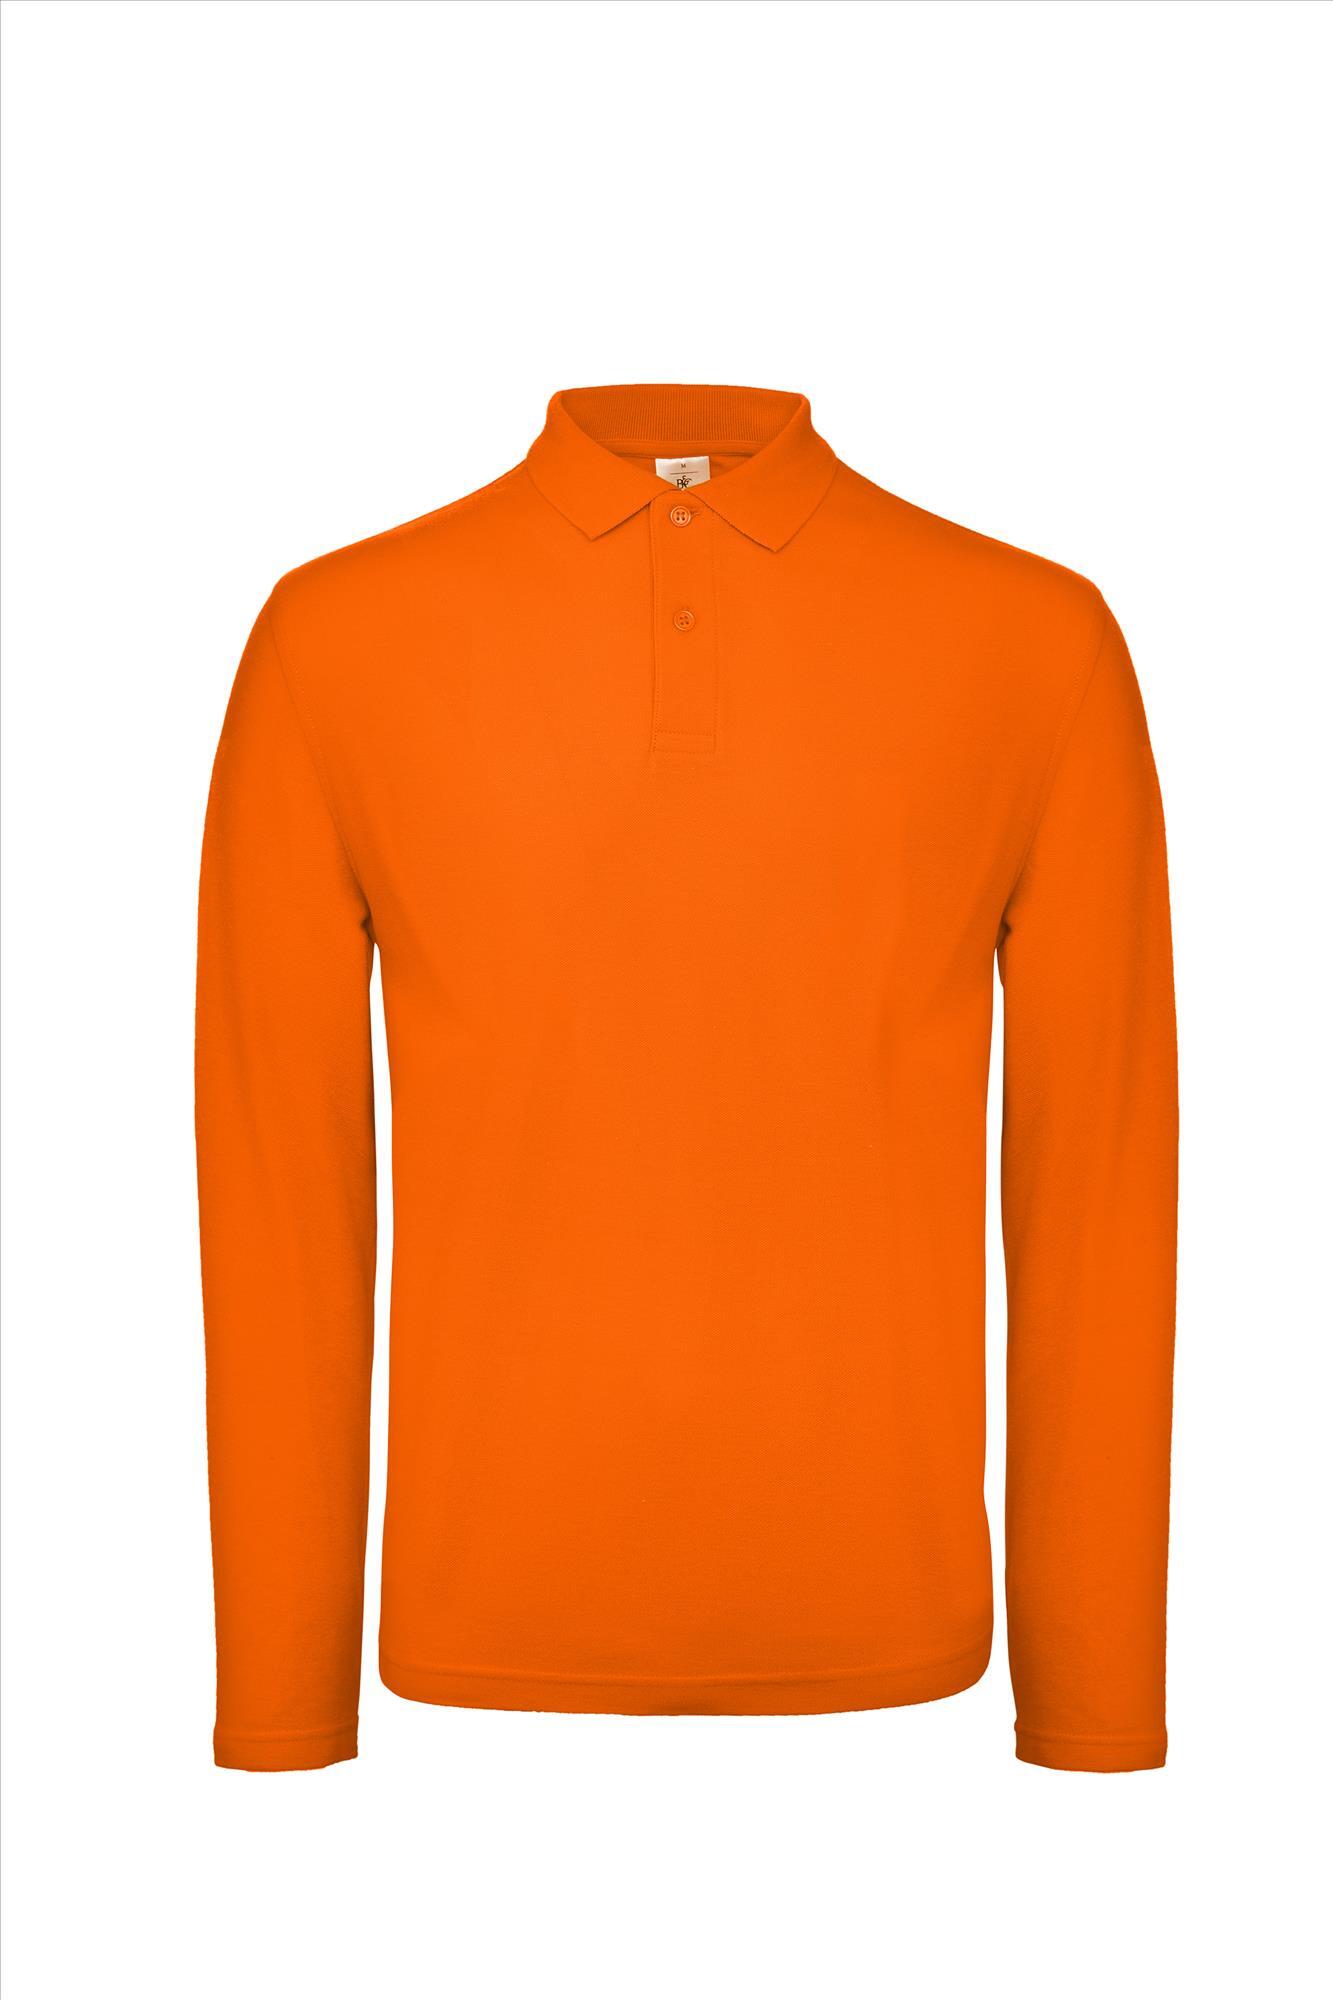 Polo met lange mouwen voor heren oranje bedrukbaar te personaliseren